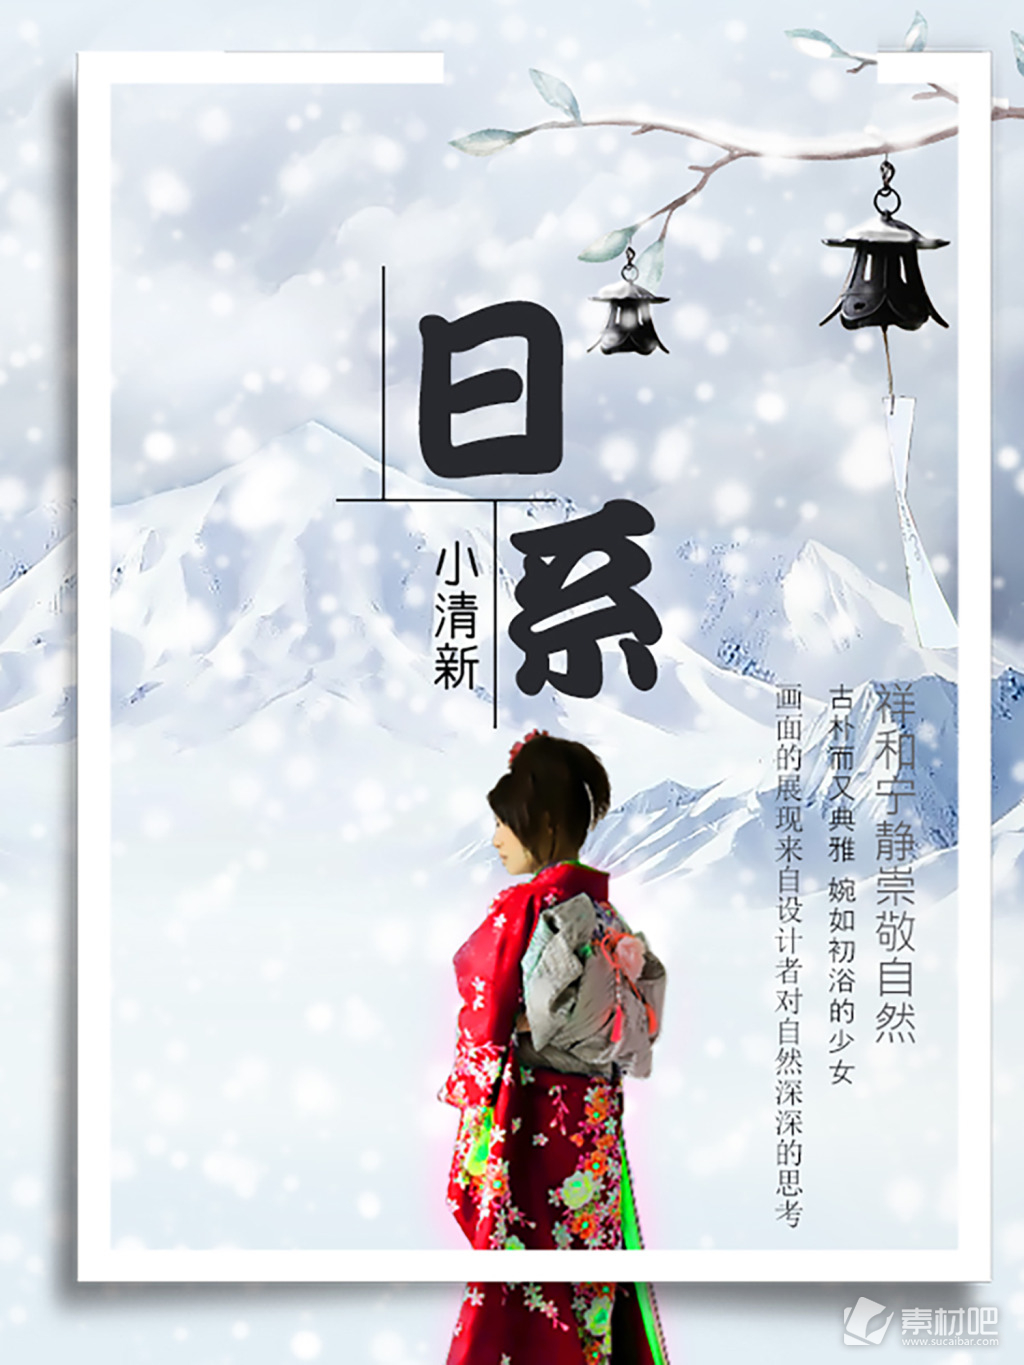 日式水粉古典风格小清新宣传招聘商用海报